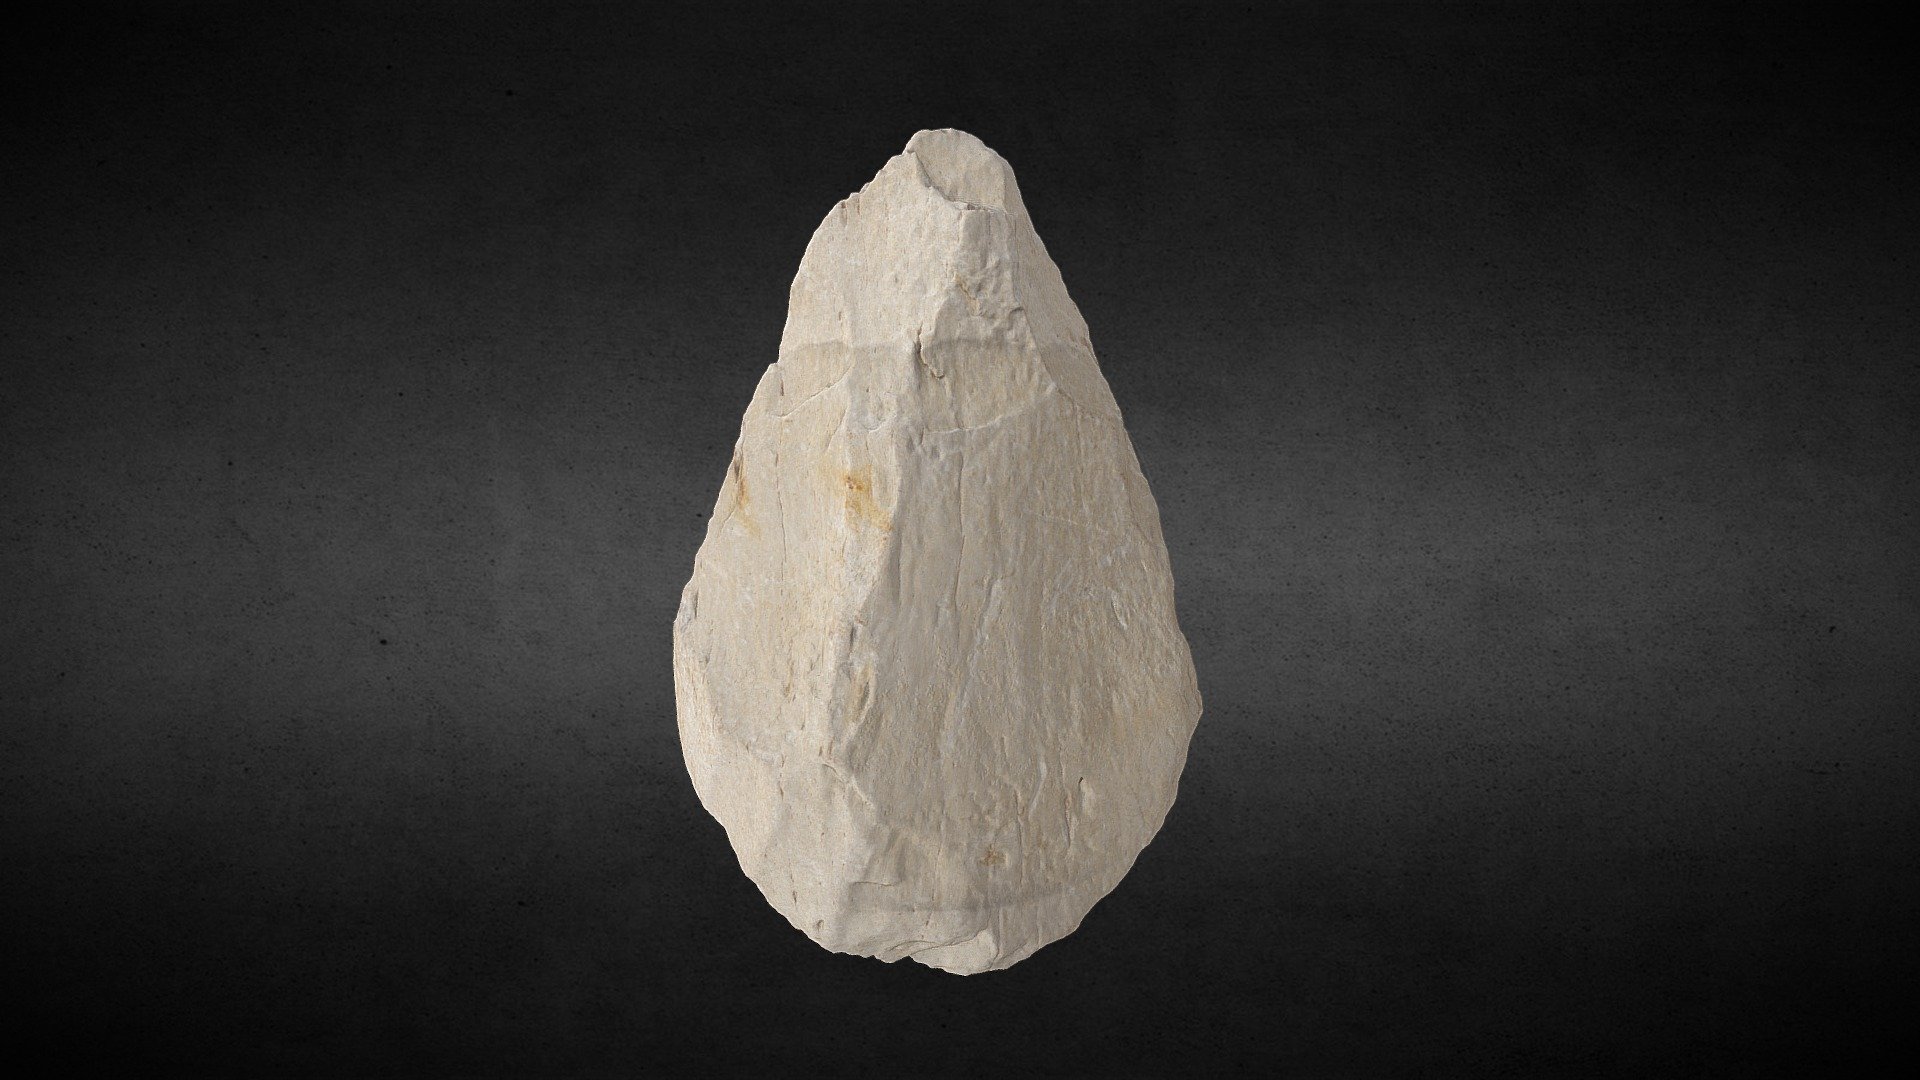 003 Knochenfaustkeil / Bone hand axe